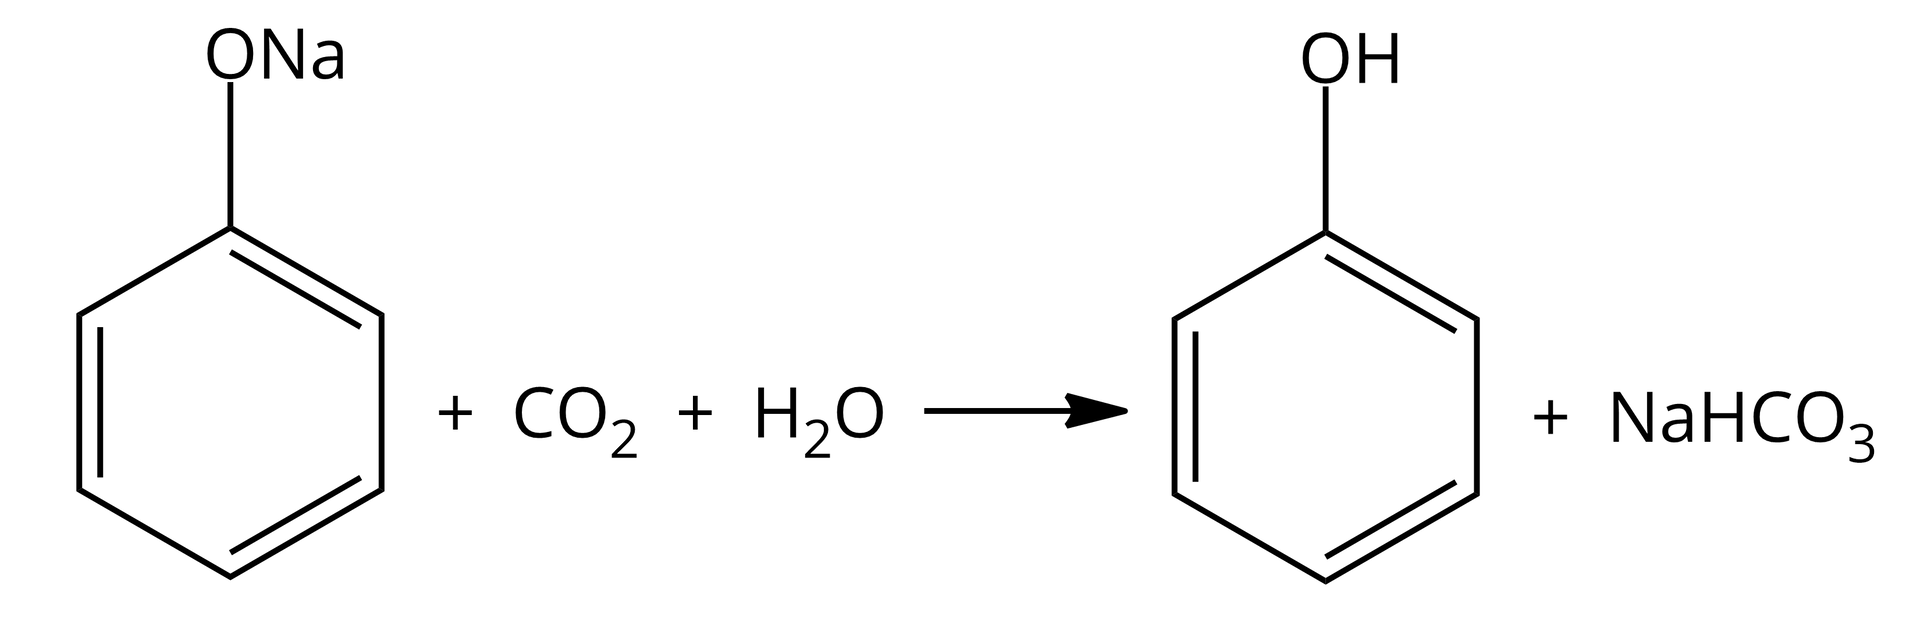 Na ilustracji jest równanie reakcji: jedna cząsteczka fenolanu sodu dodać jedna cząsteczka dwutlenku węgla dodać jedna cząsteczka wody daje jedną cząsteczkę fenolu dodać jedną cząsteczkę wodorowęglanu sodu. 